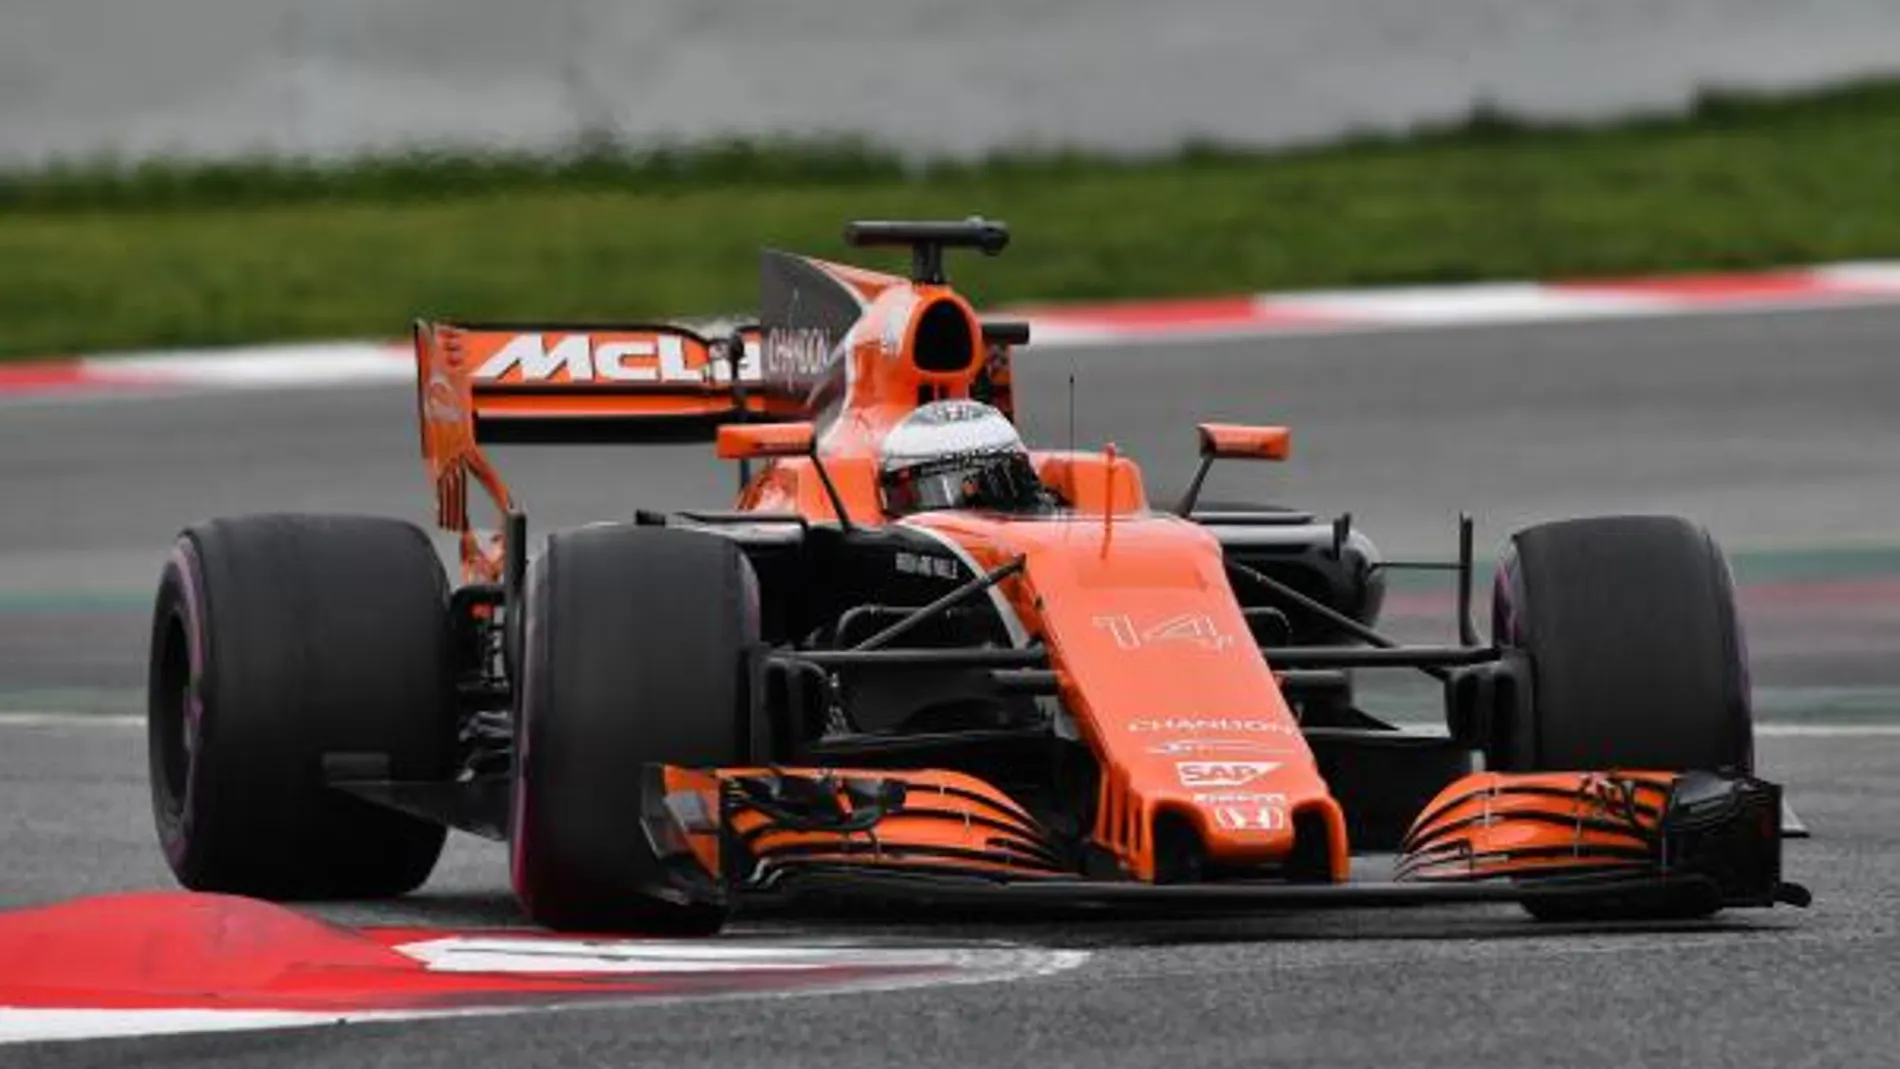 A rueda: McLaren, háztelo mirar